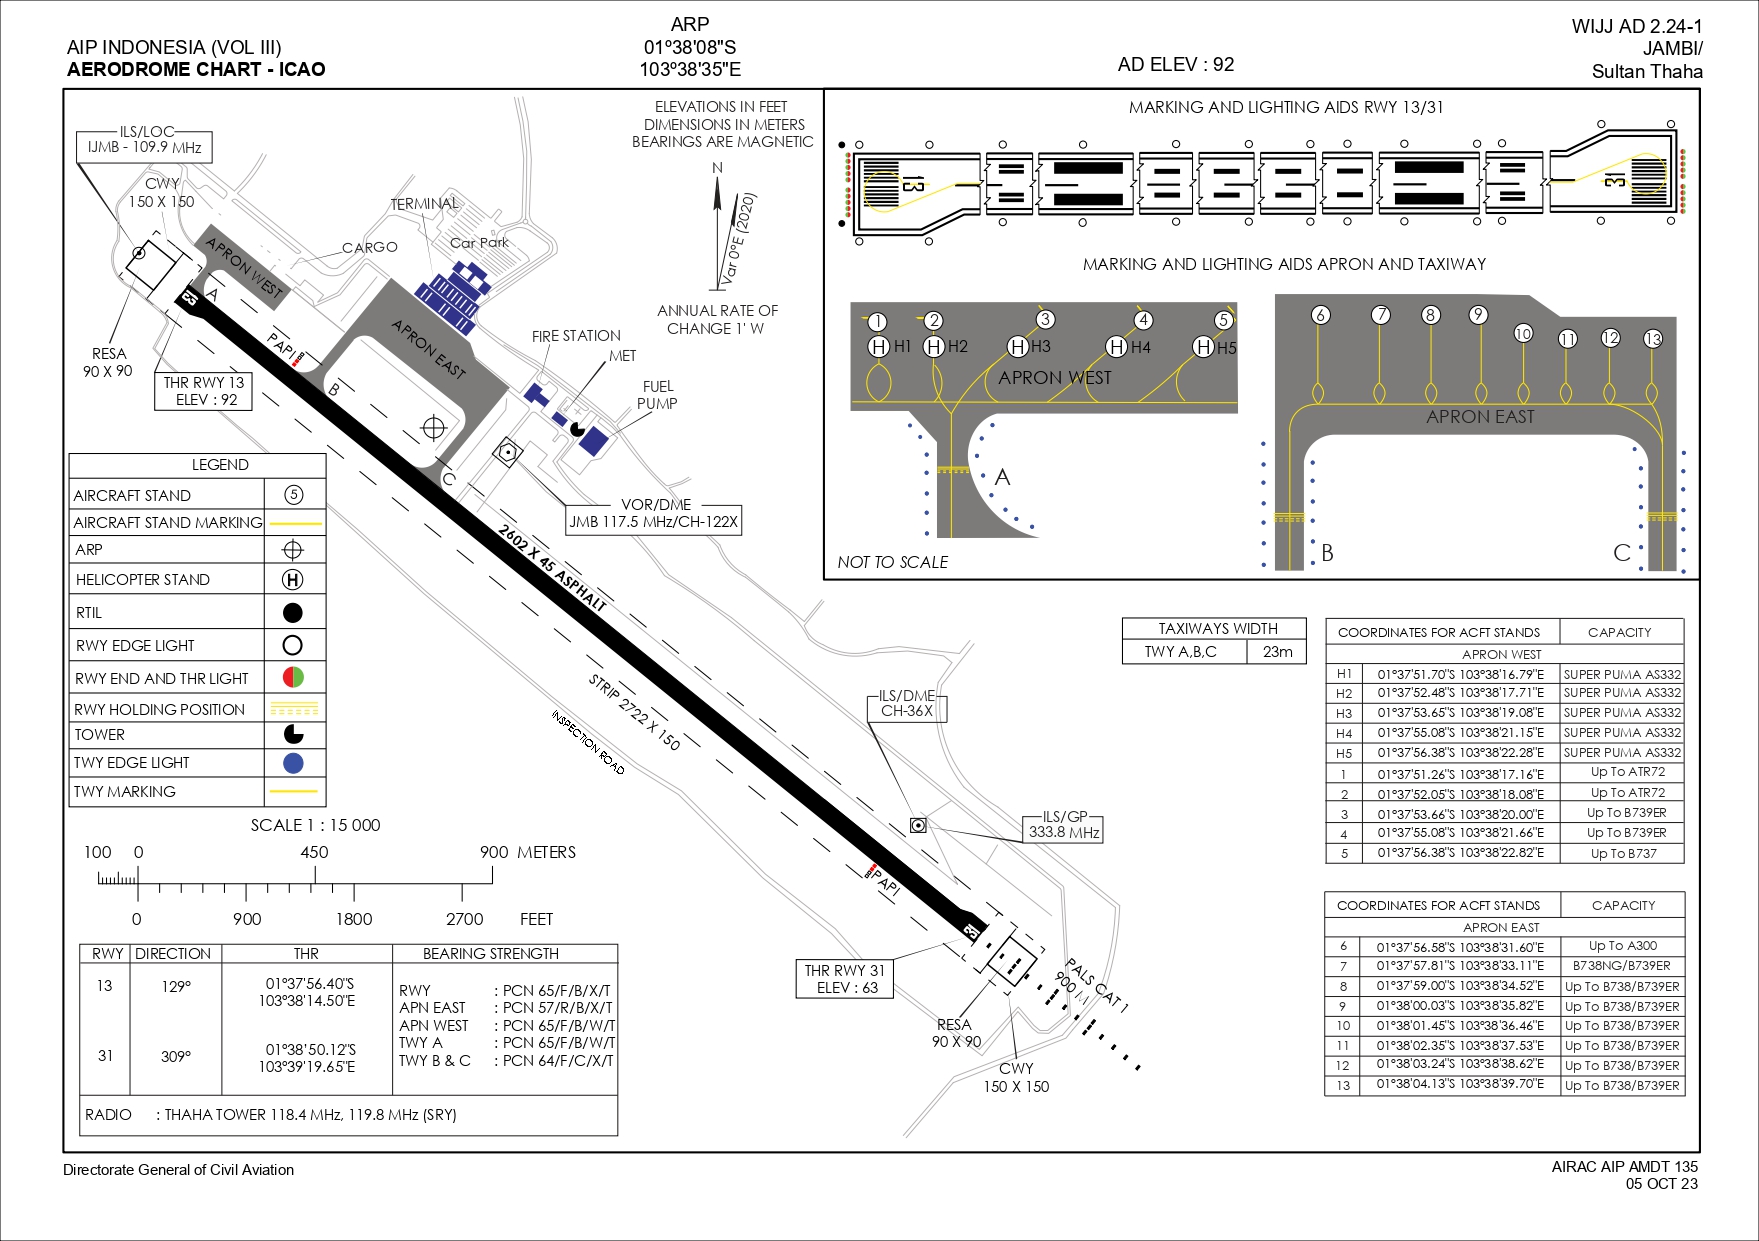 Gambar Peta Bandara AERODROME CHART-ICAO JAMBI/SULTAN THAHA